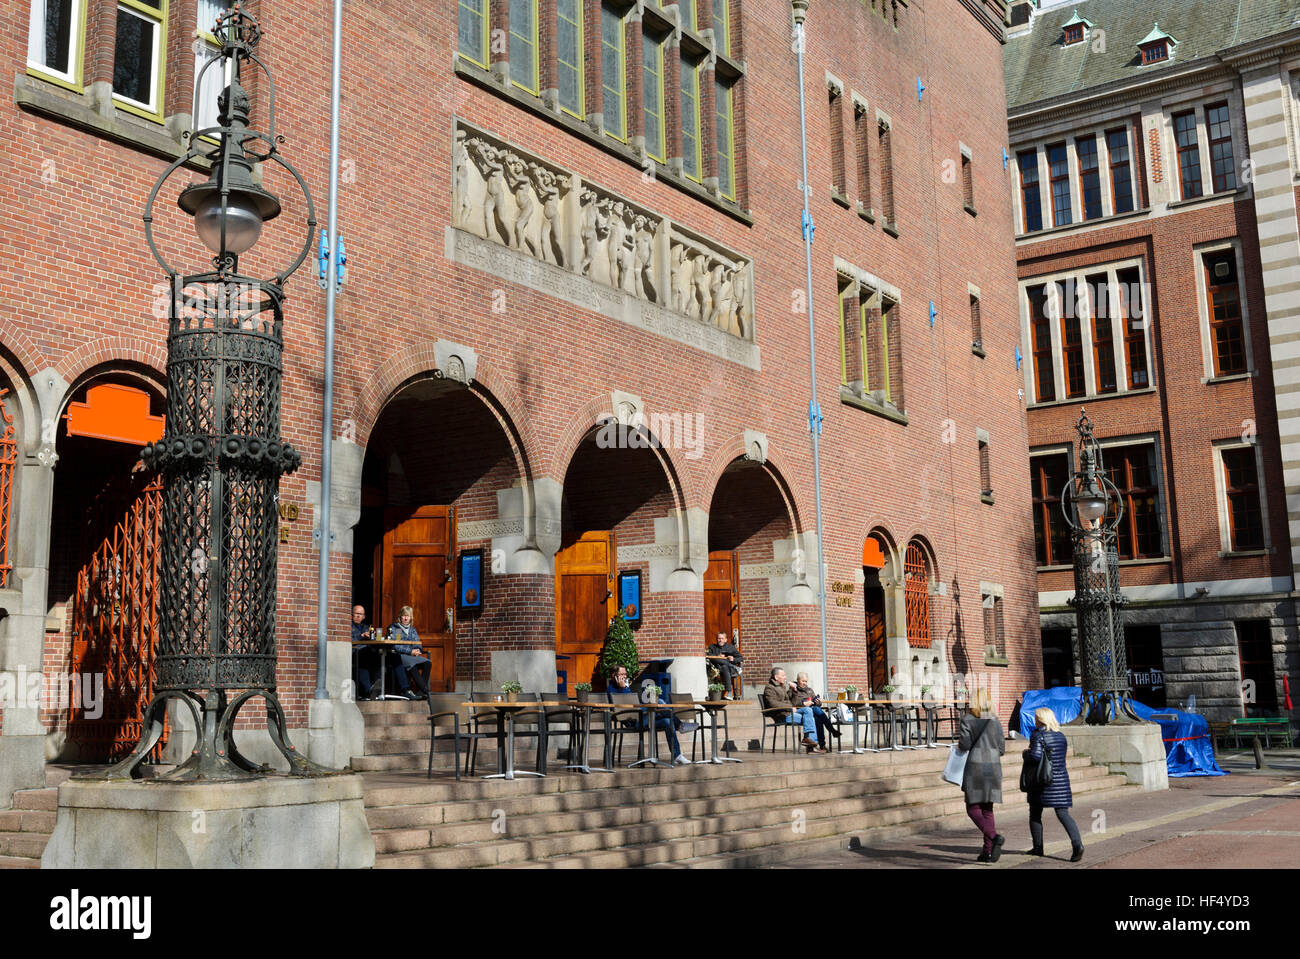 L'entrée du bâtiment de Beurs van Berlage à Amsterdam, Hollande, Pays-Bas. Banque D'Images